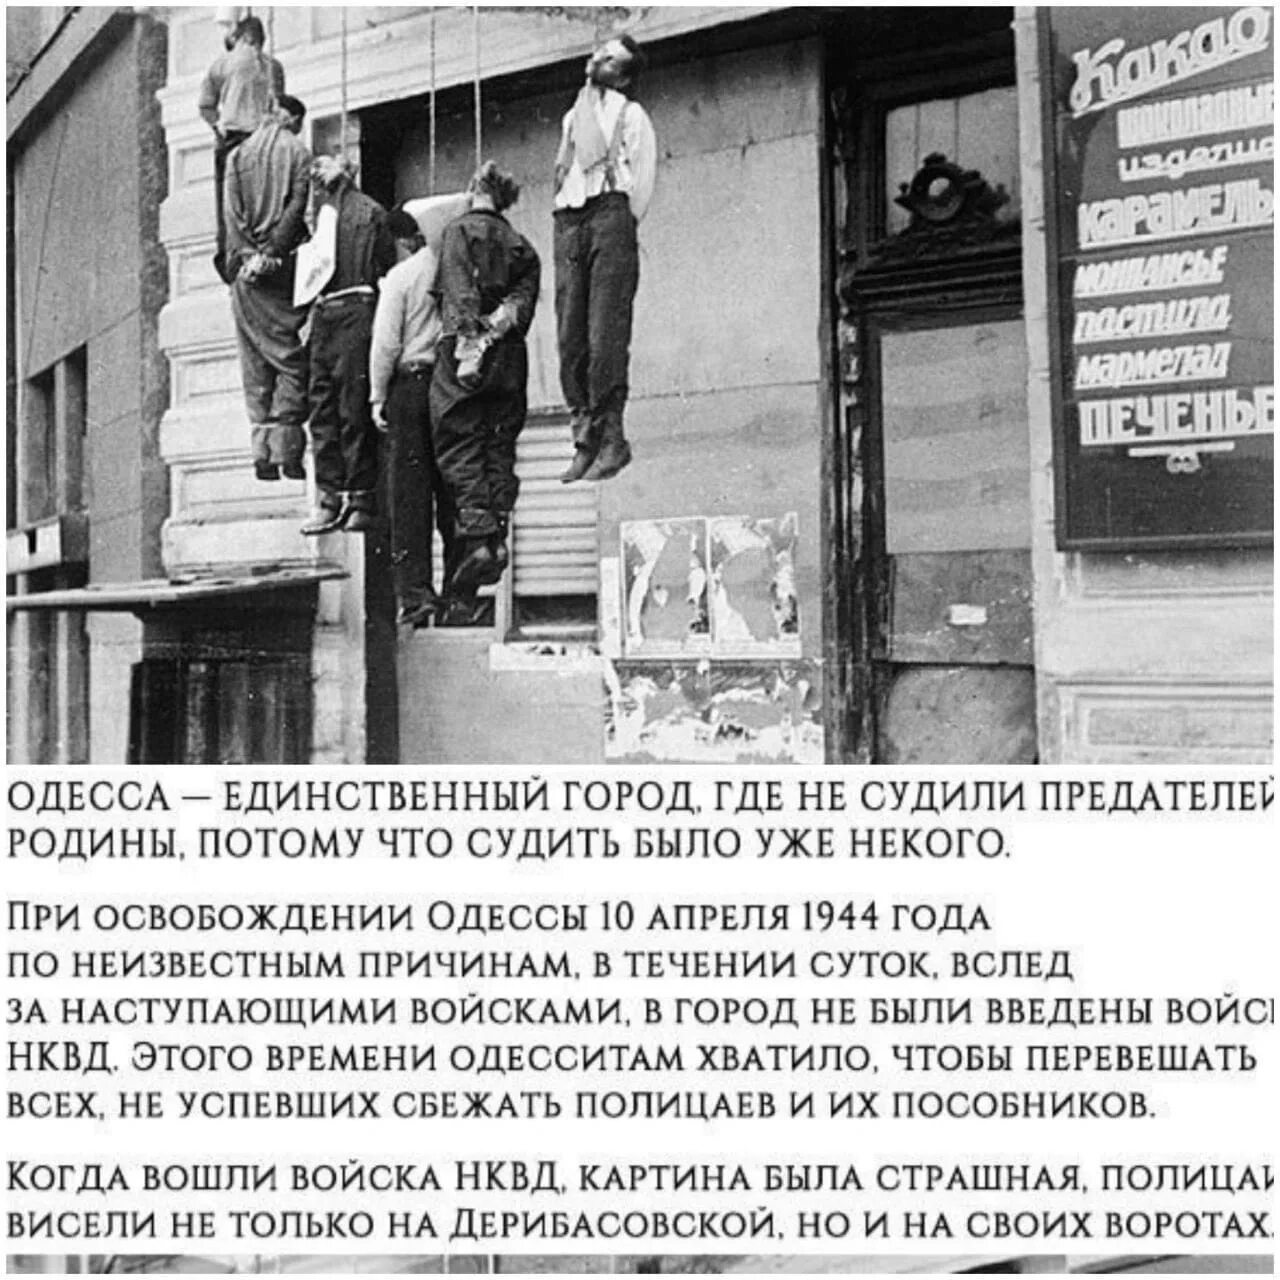 10 апреля 1944 года. Казнь полицаев в Одессе 1944. 10 Апреля 1944 Одесса полицаи. Освобождение Одессы в 1944 году повешенные полицаи. Одесса в 1944 году.